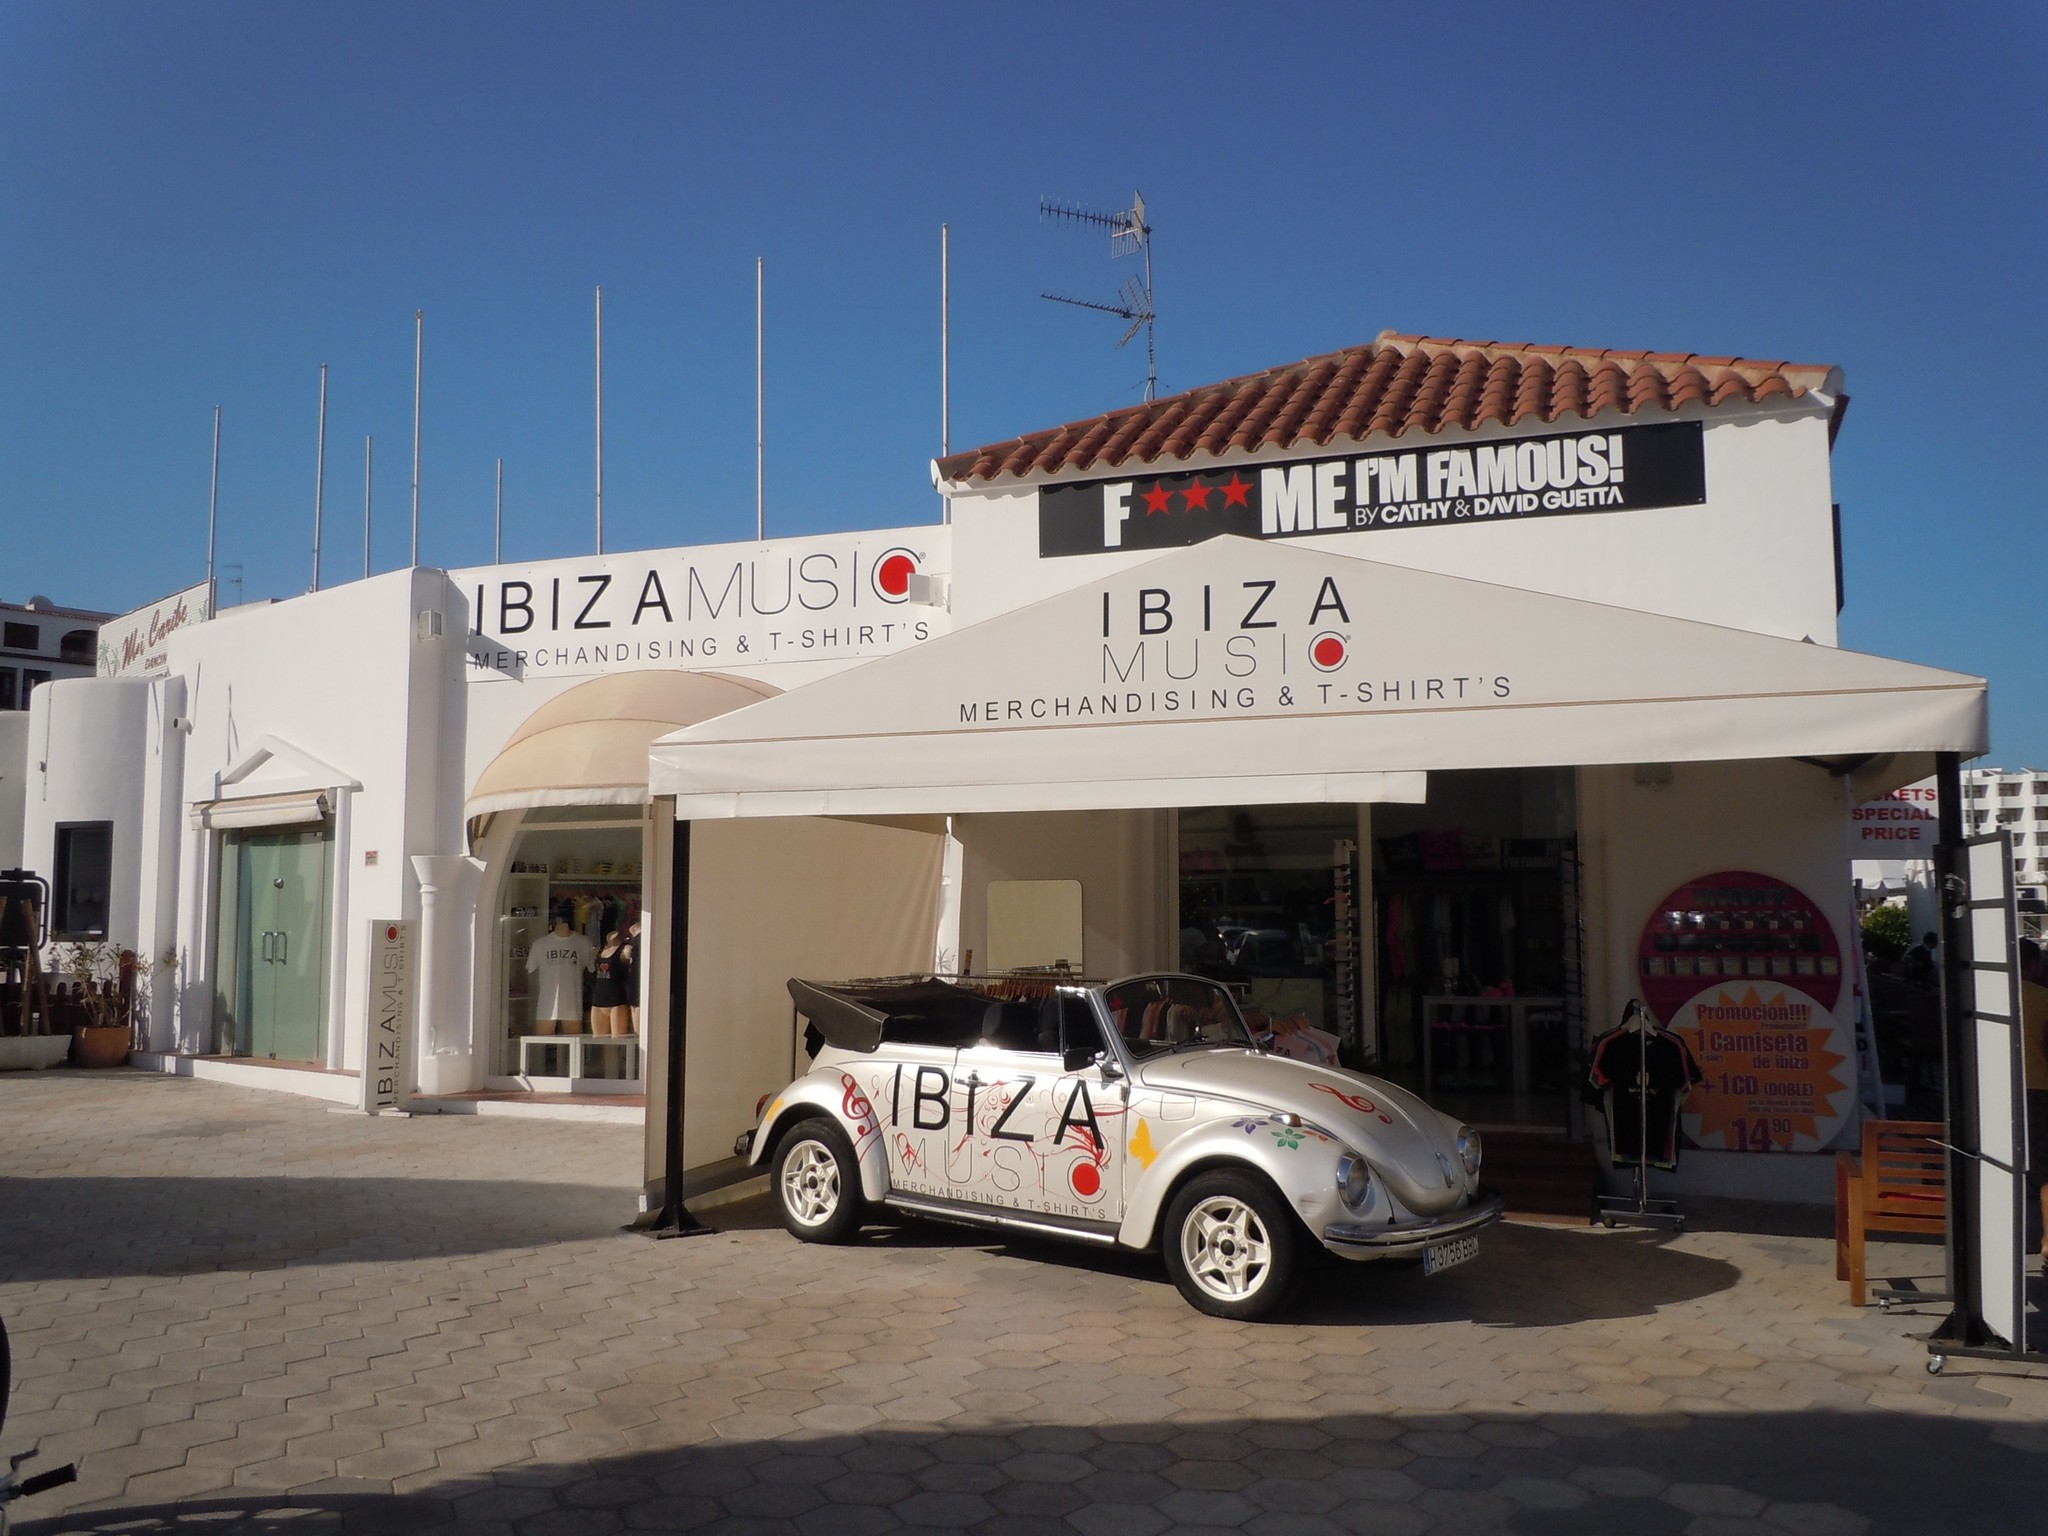 Negozio di souvenir a Ibiza